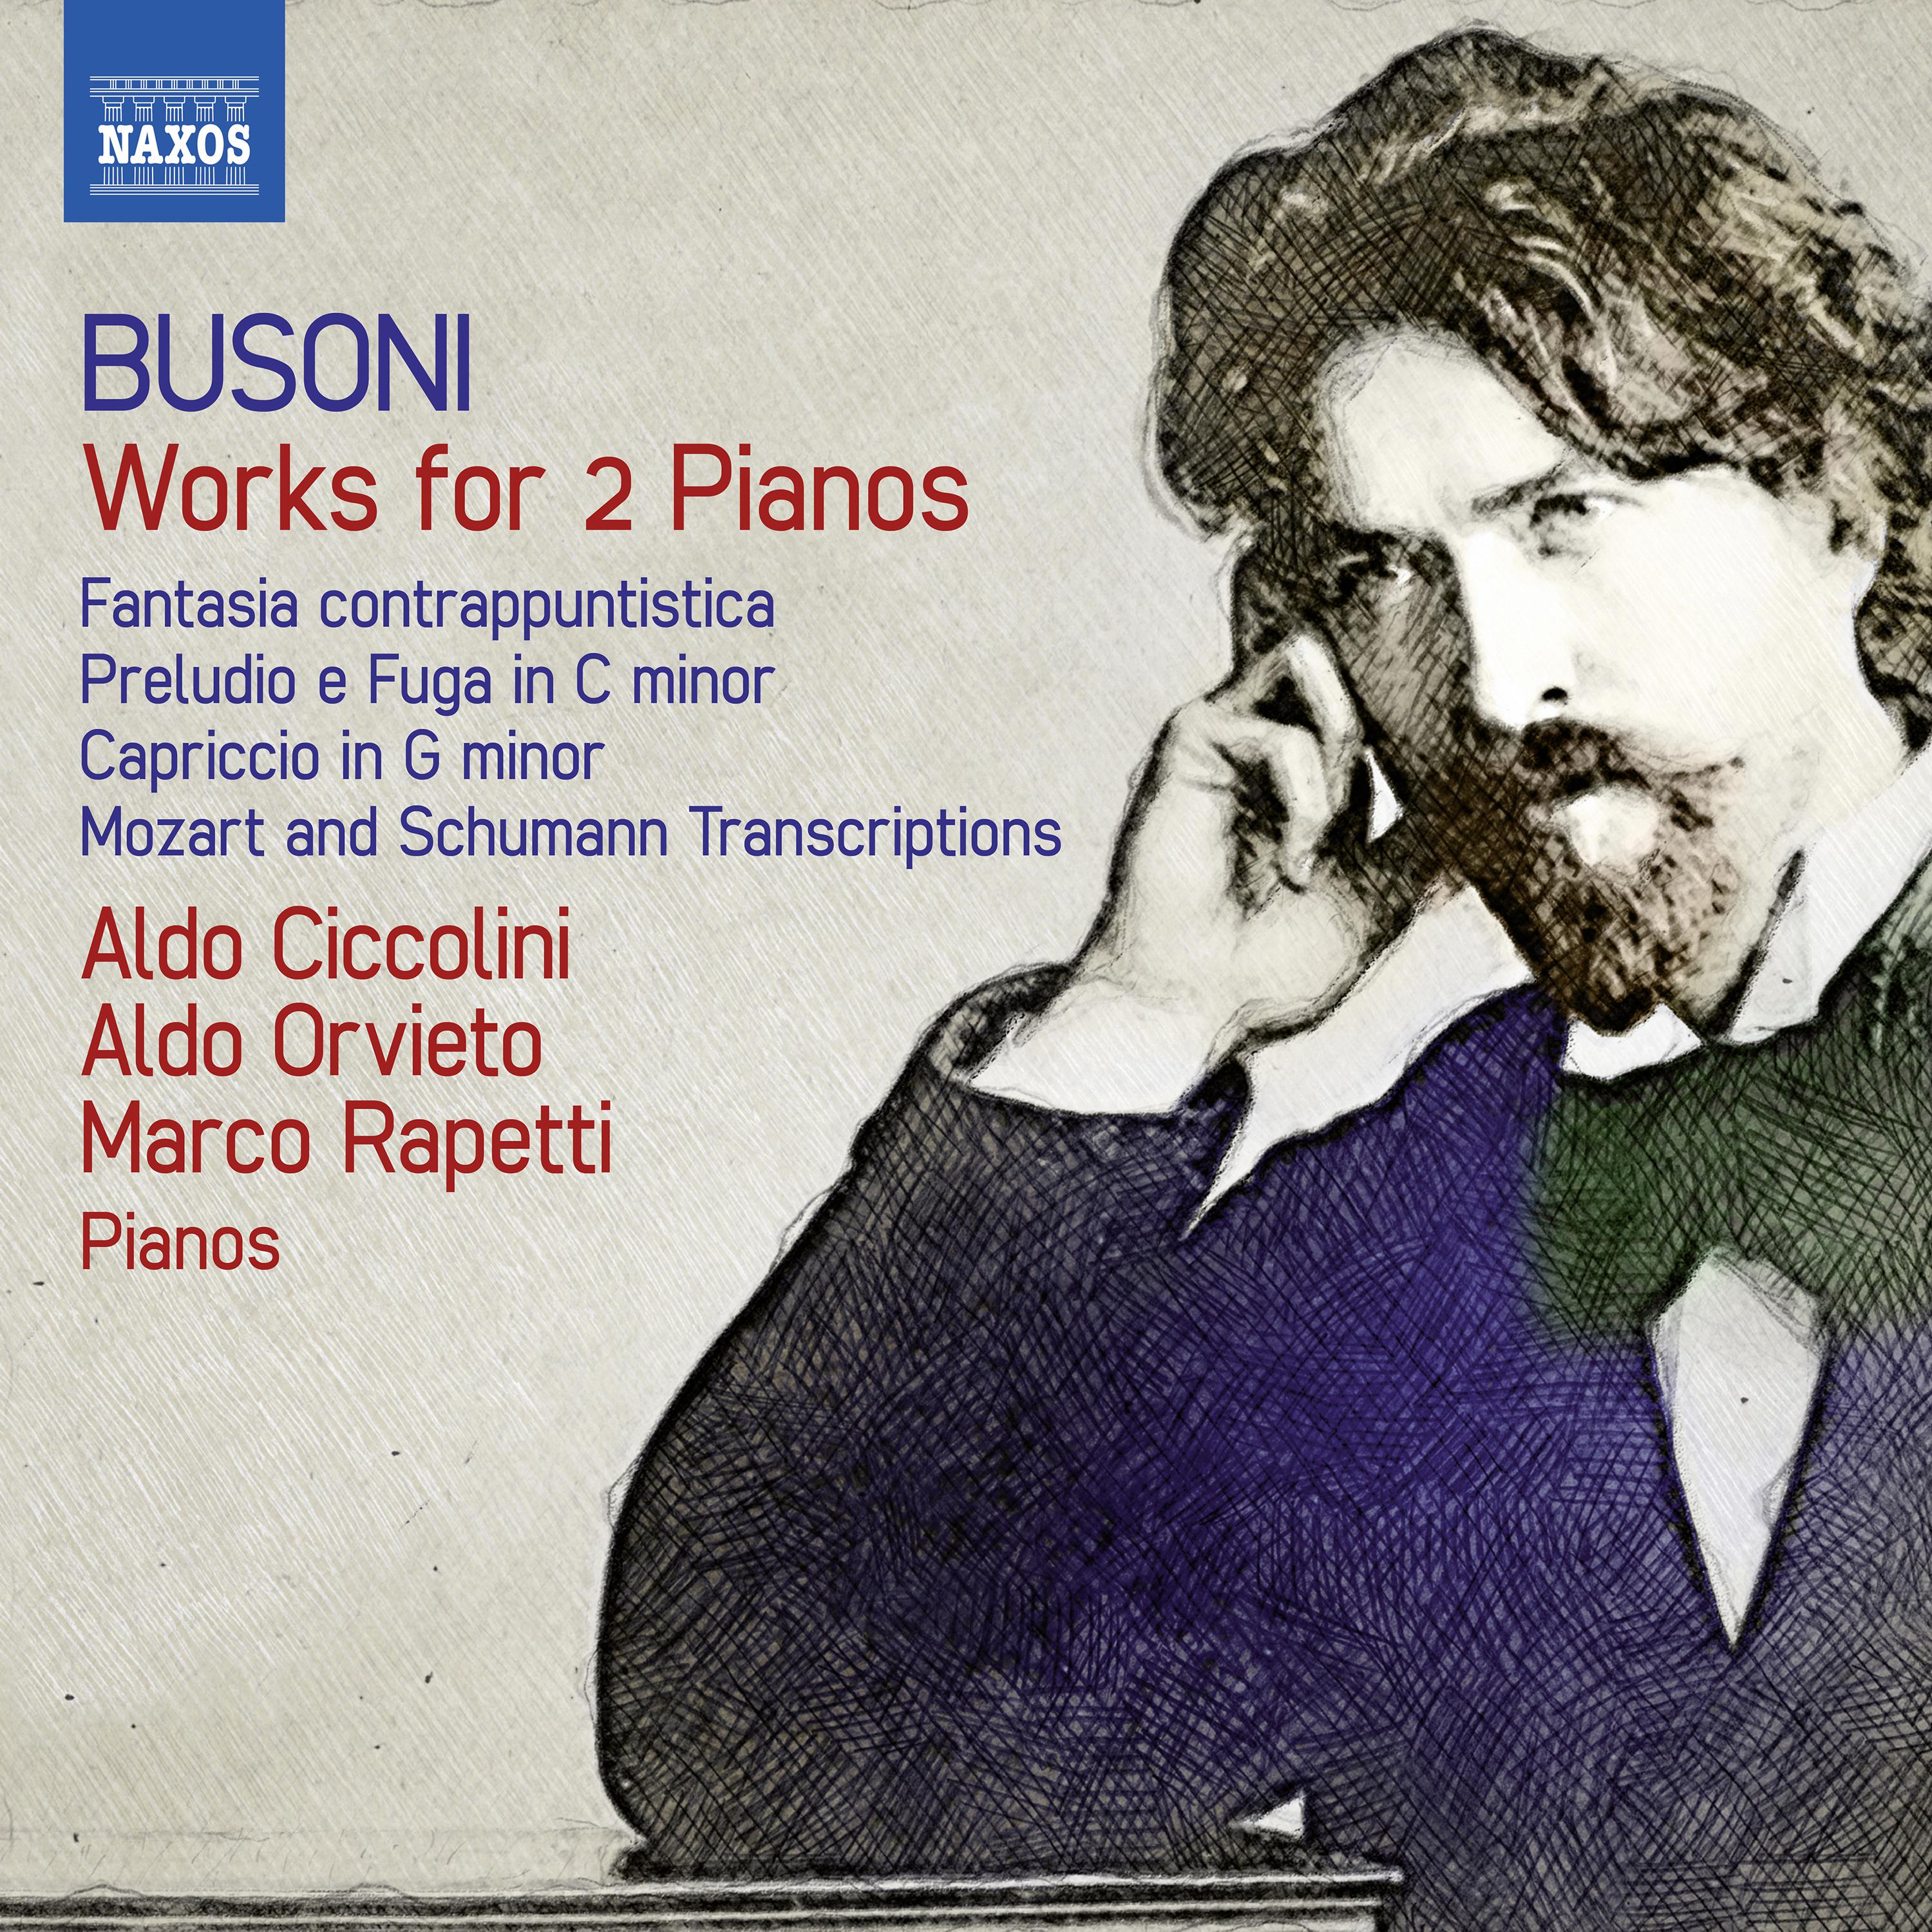 Marco Rapetti - Capriccio in G Minor, Op. 36:Allegro vivace